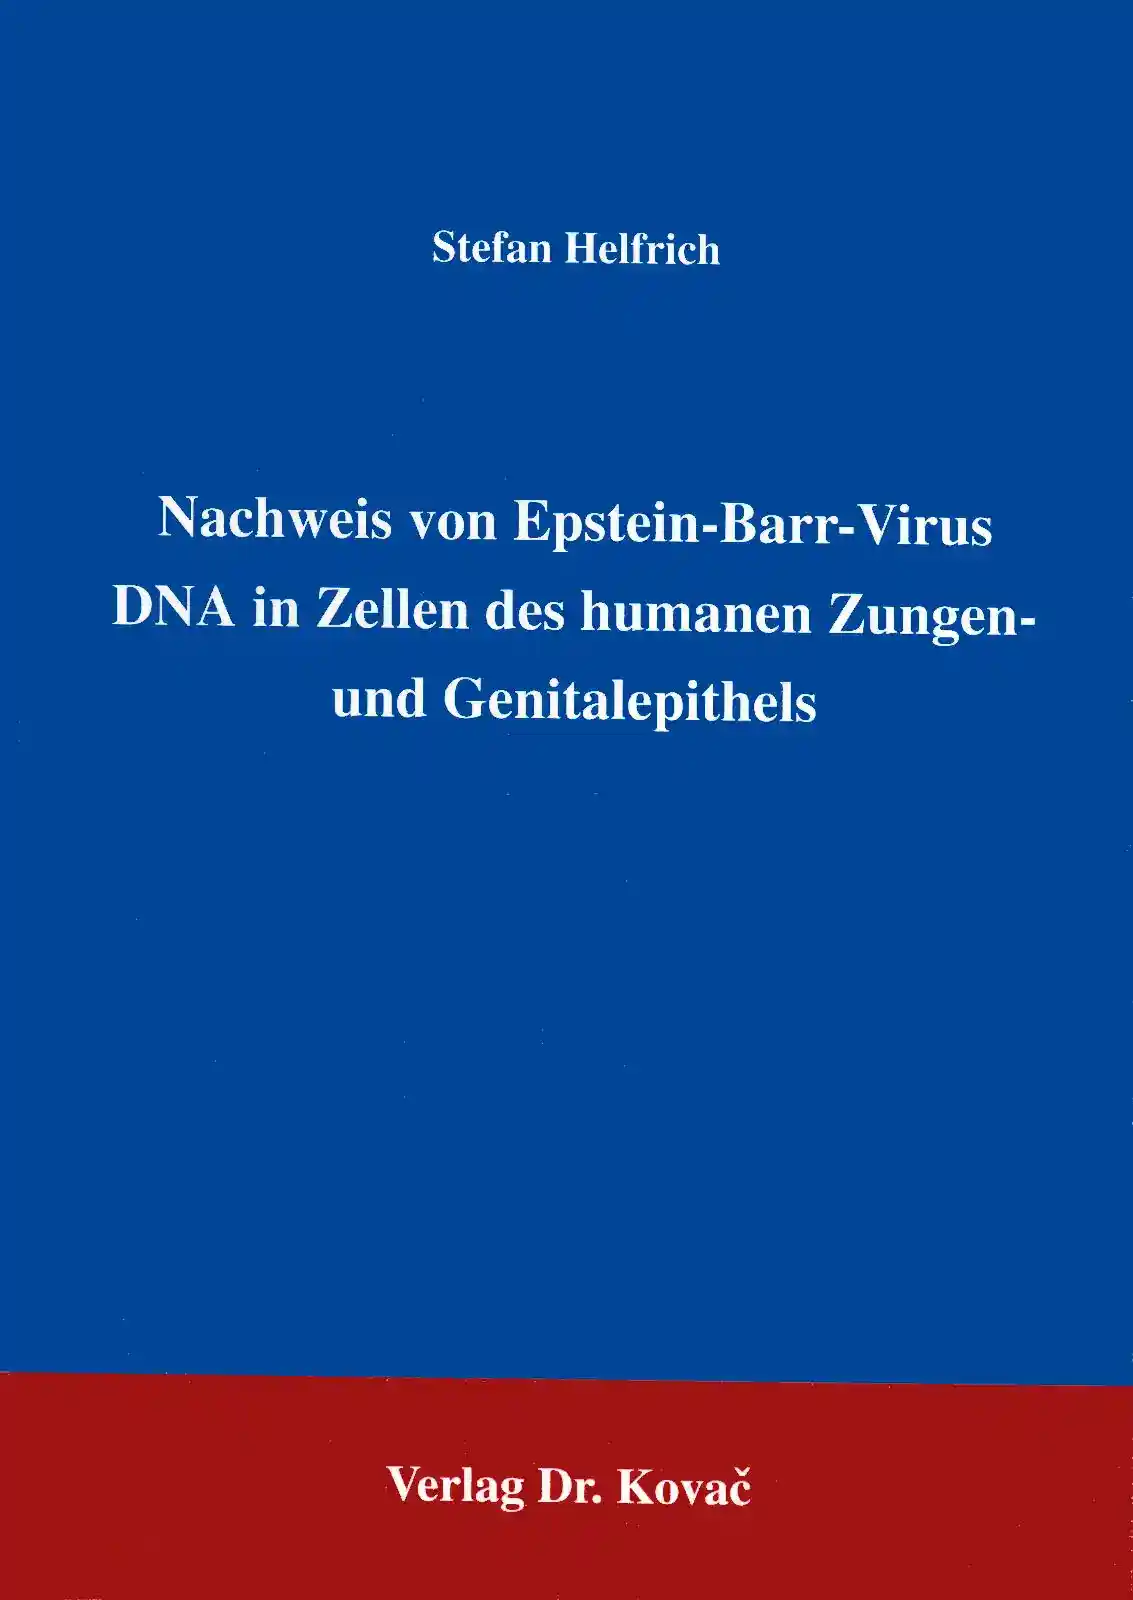 : Nachweis von Epstein-Barr-Virus DNA in Zellen des humanen Zungen- und Genitalepithels